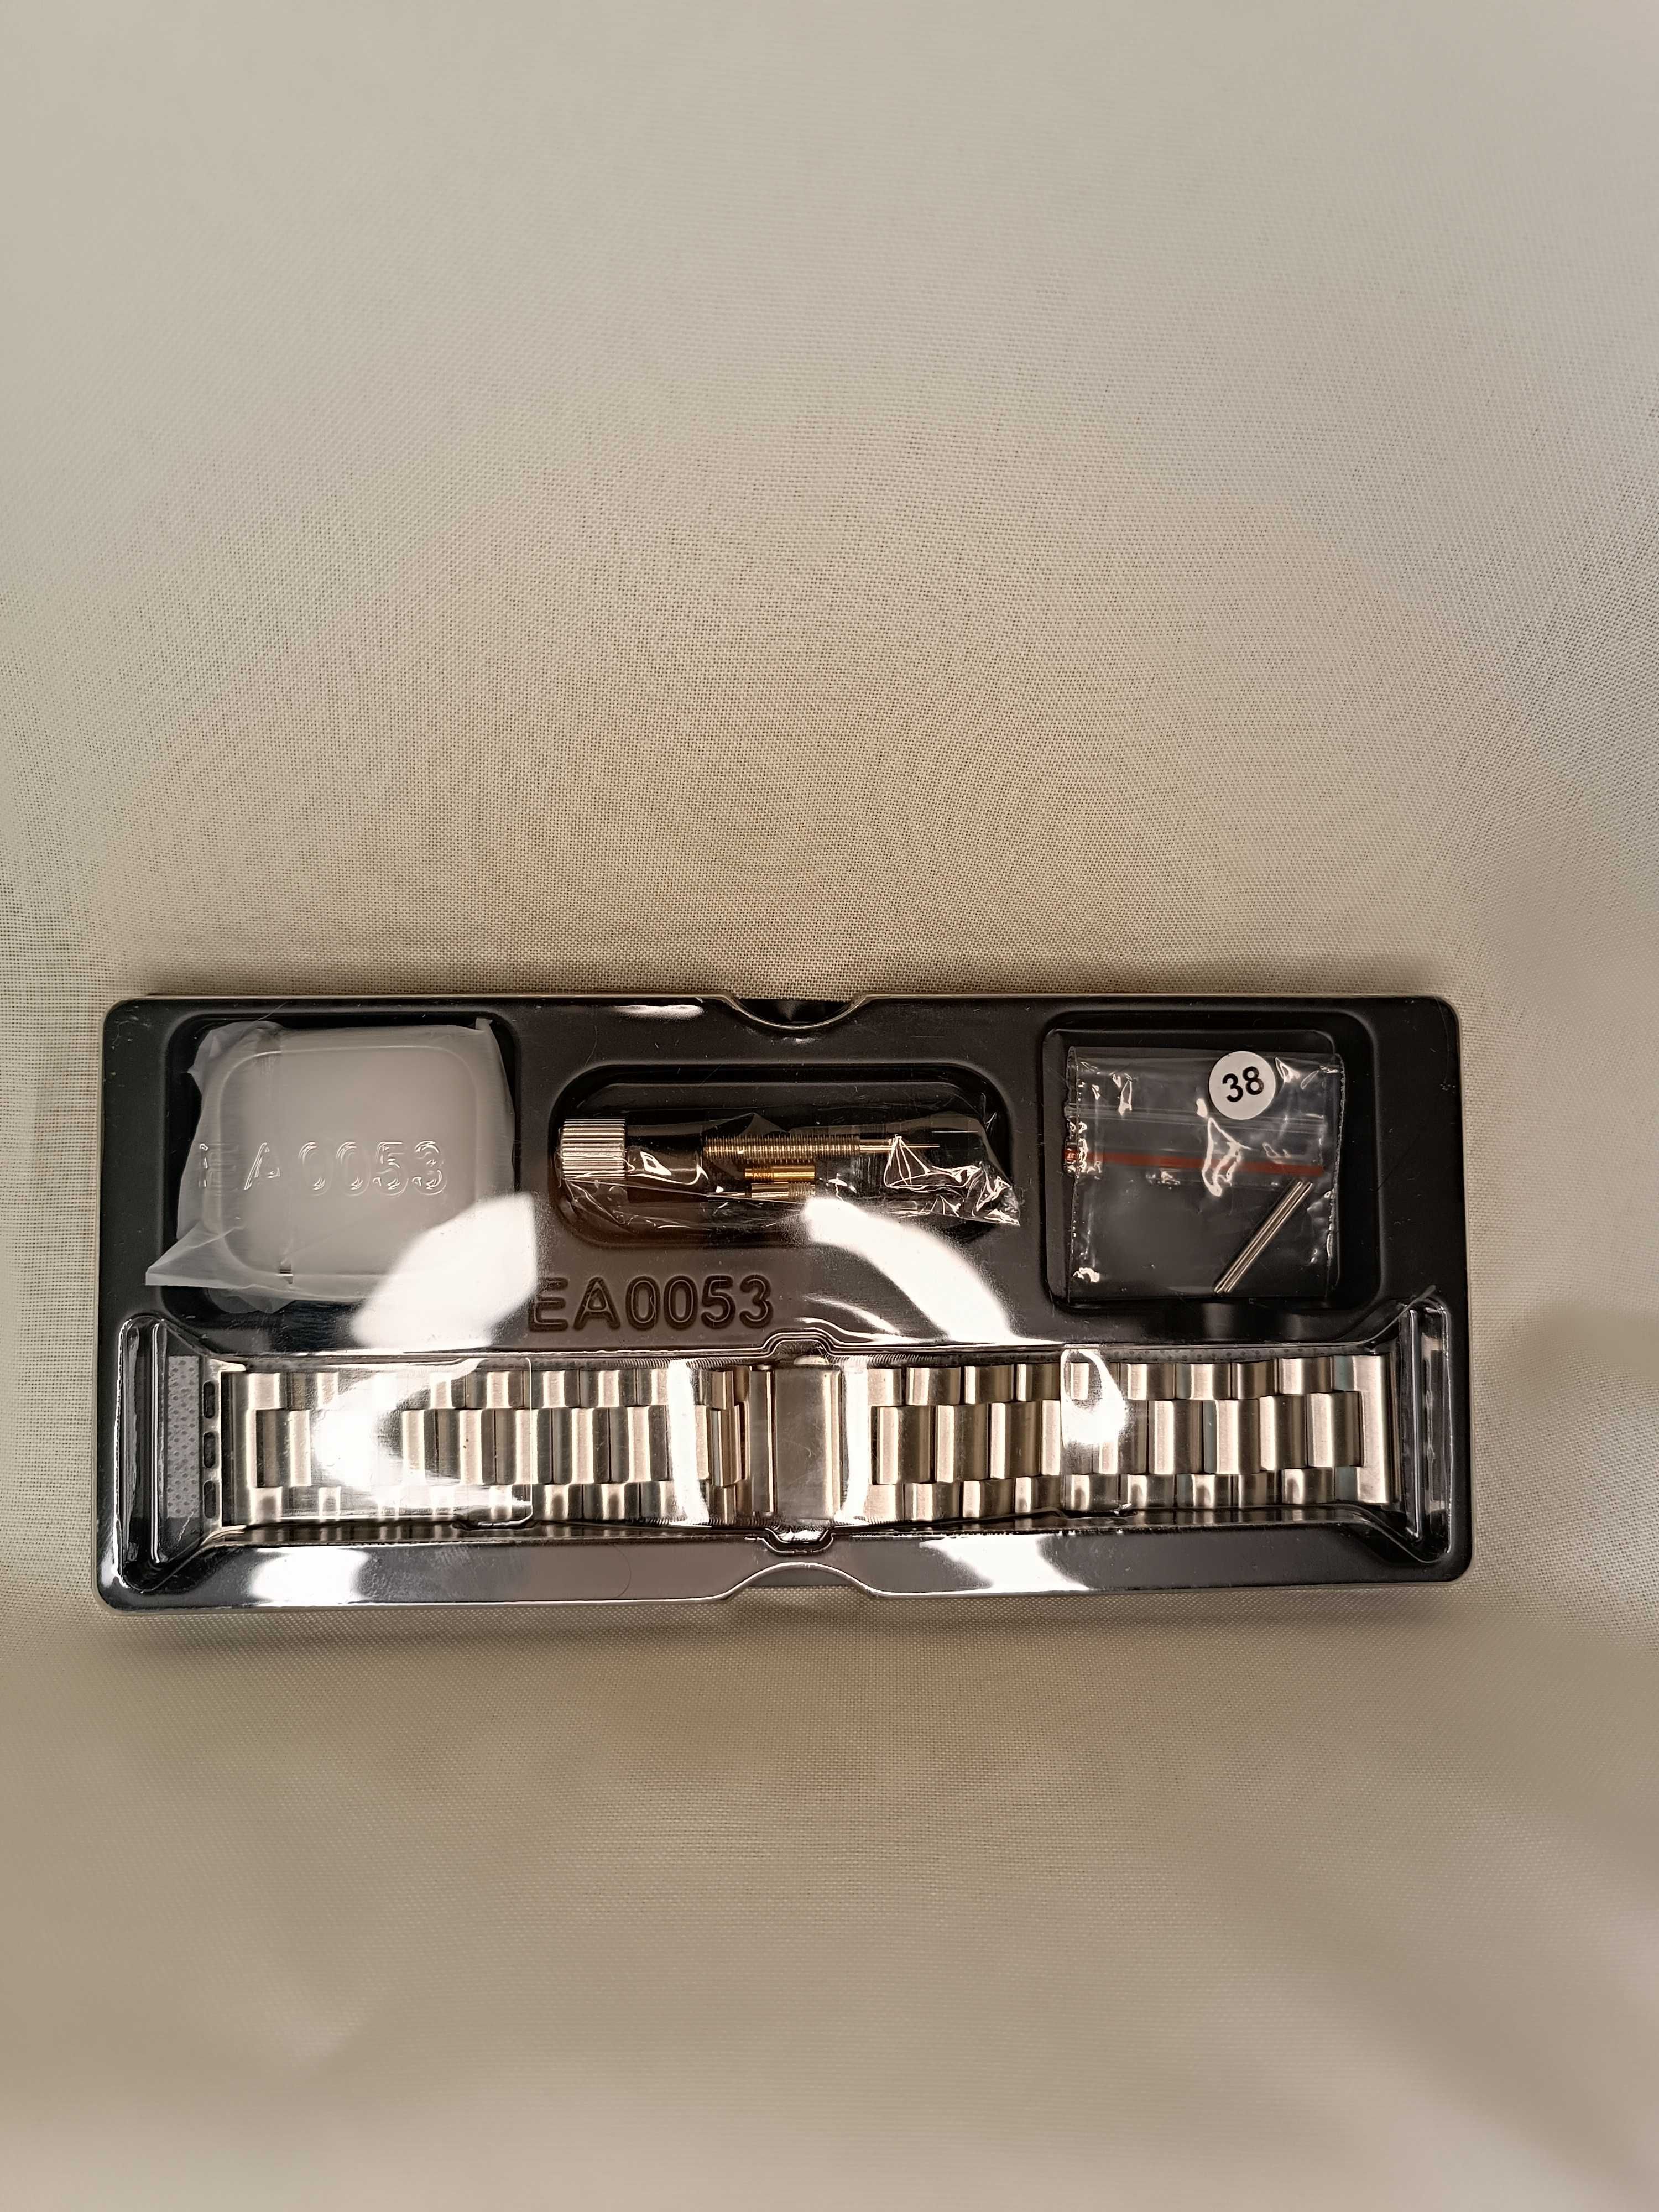 FULLMOSA EA0053 bransoletka do Apple Watch 38mm